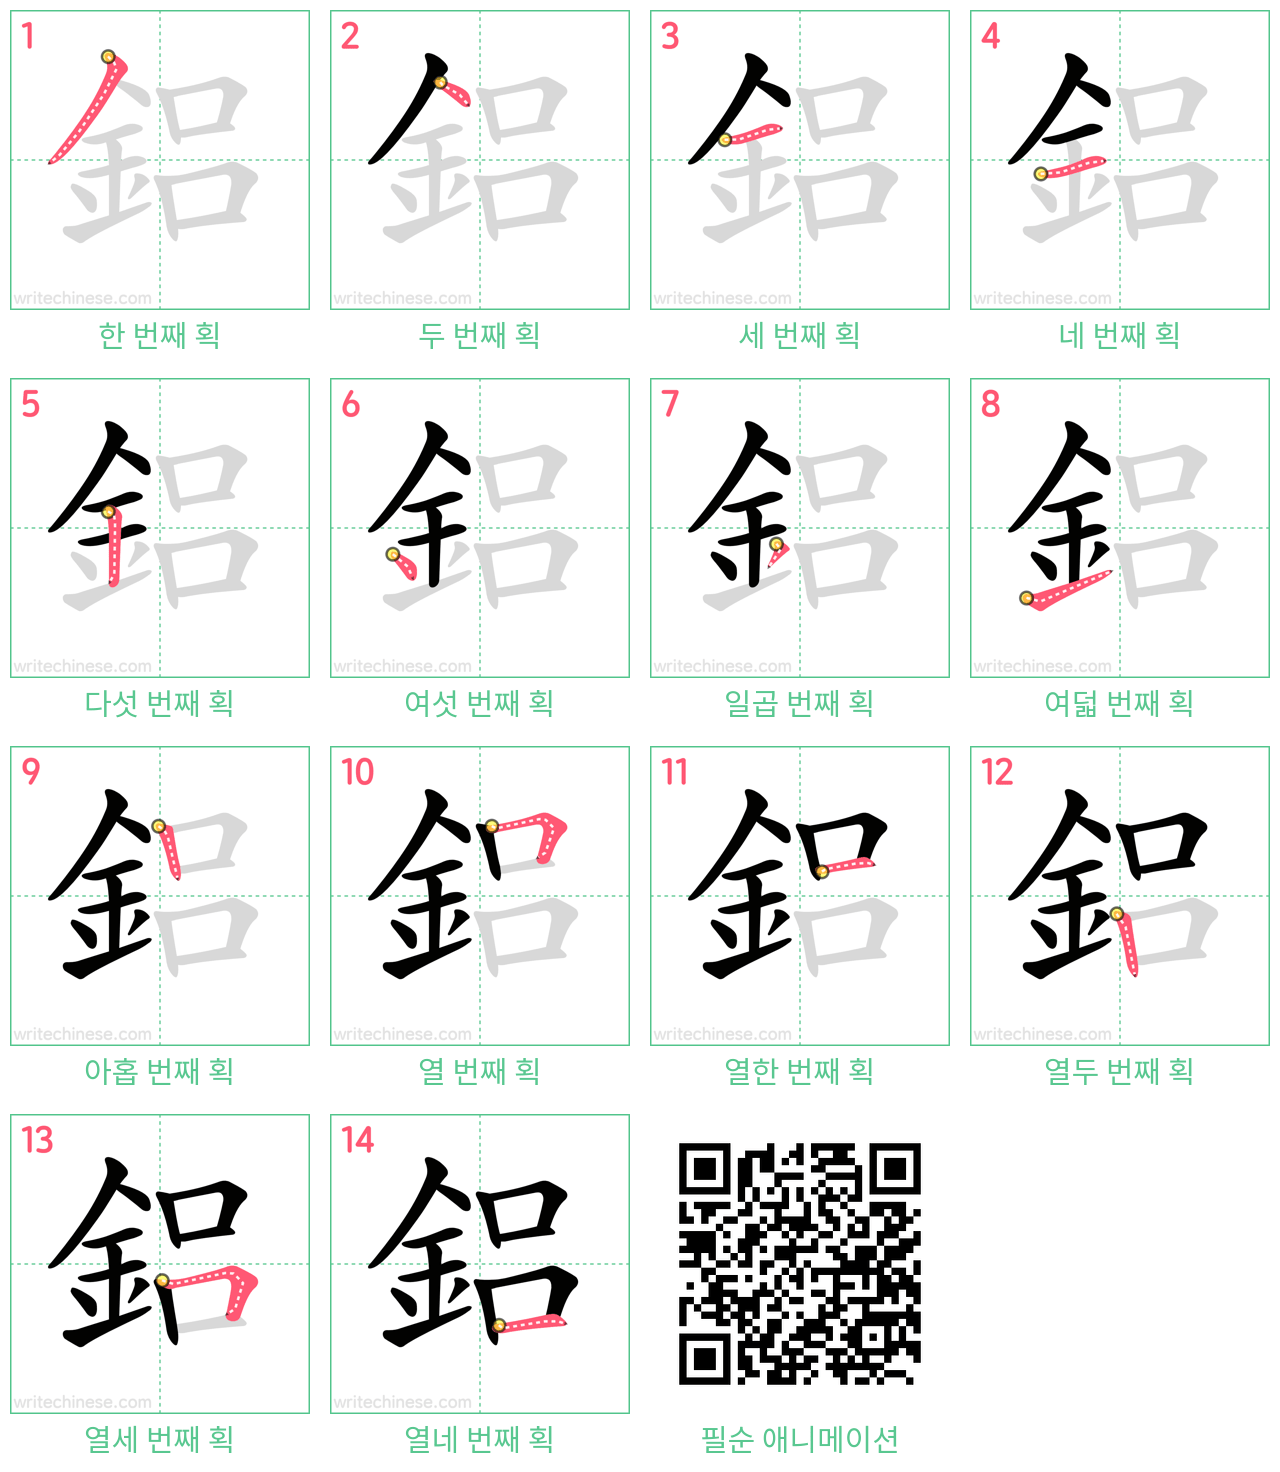 鋁 step-by-step stroke order diagrams